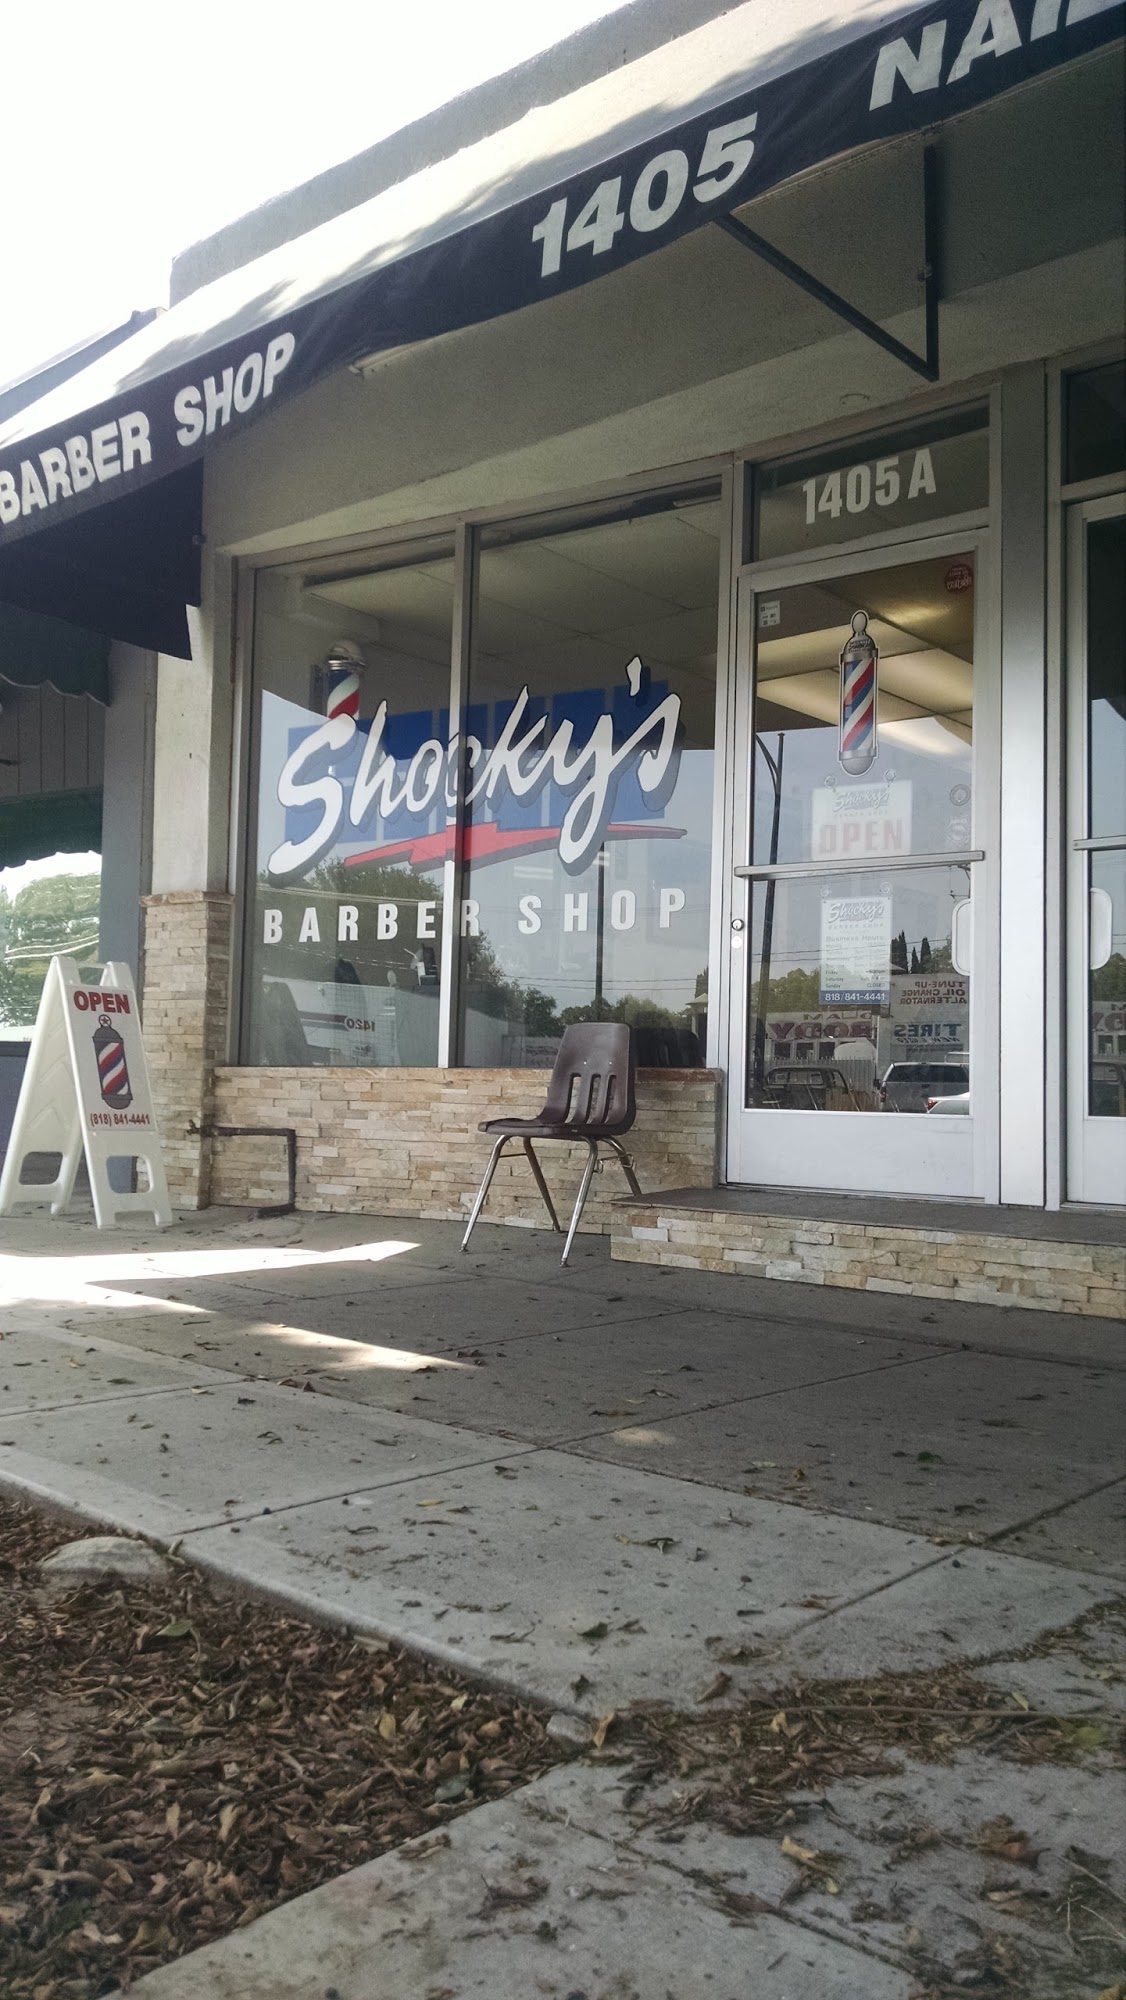 Shocky's Barber Shop